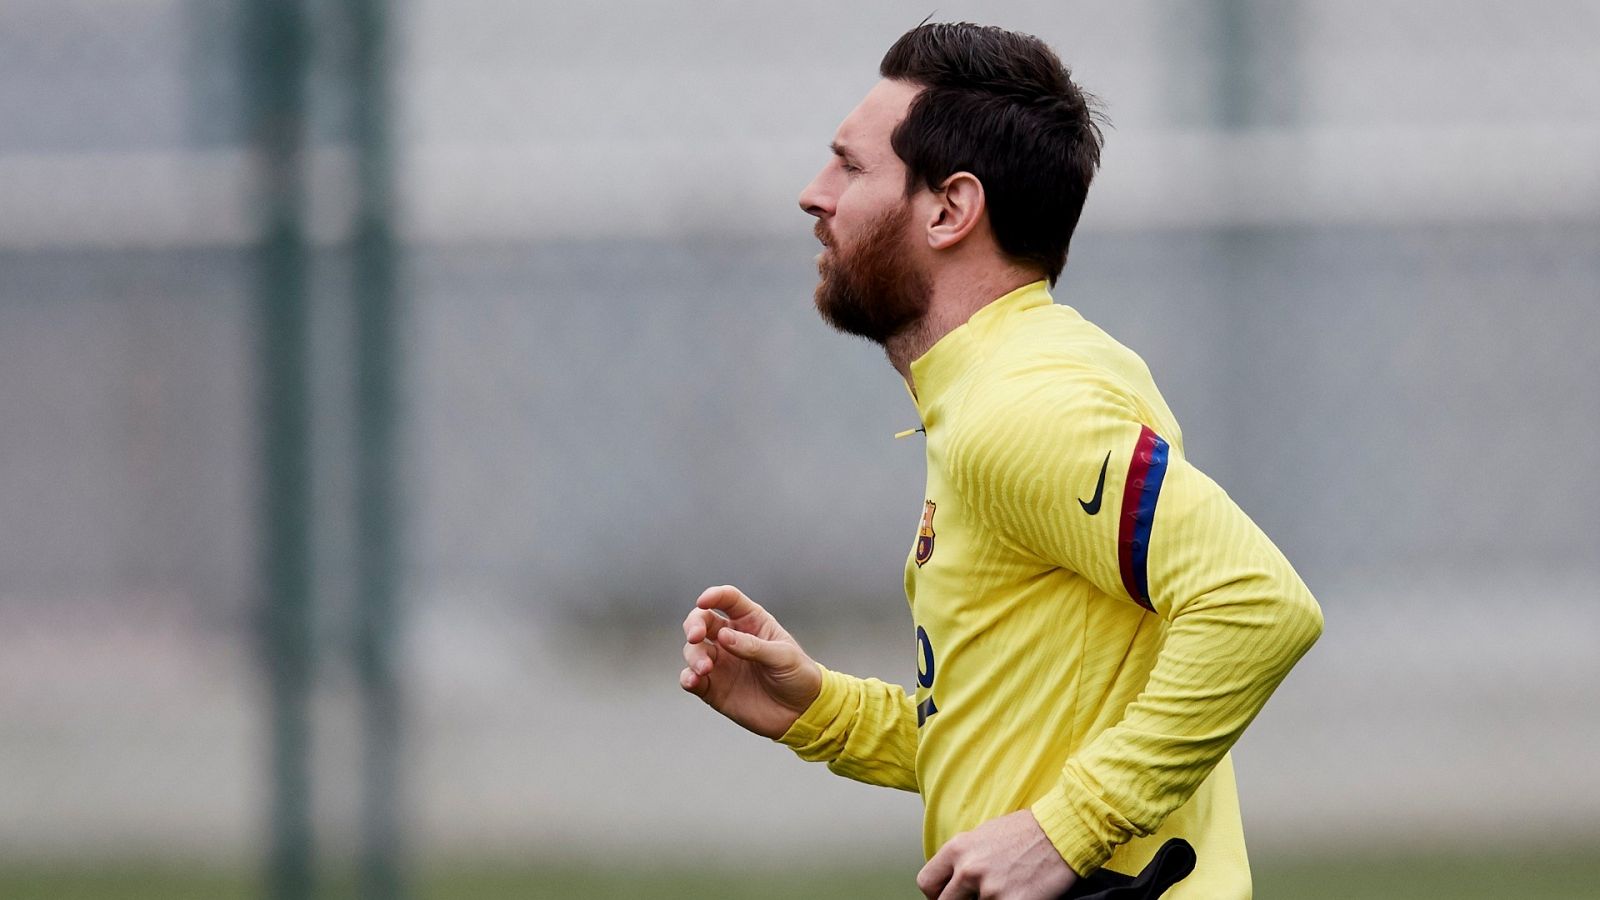  El jugador del FC Barcelona, Leo Messi, entrena en solitario